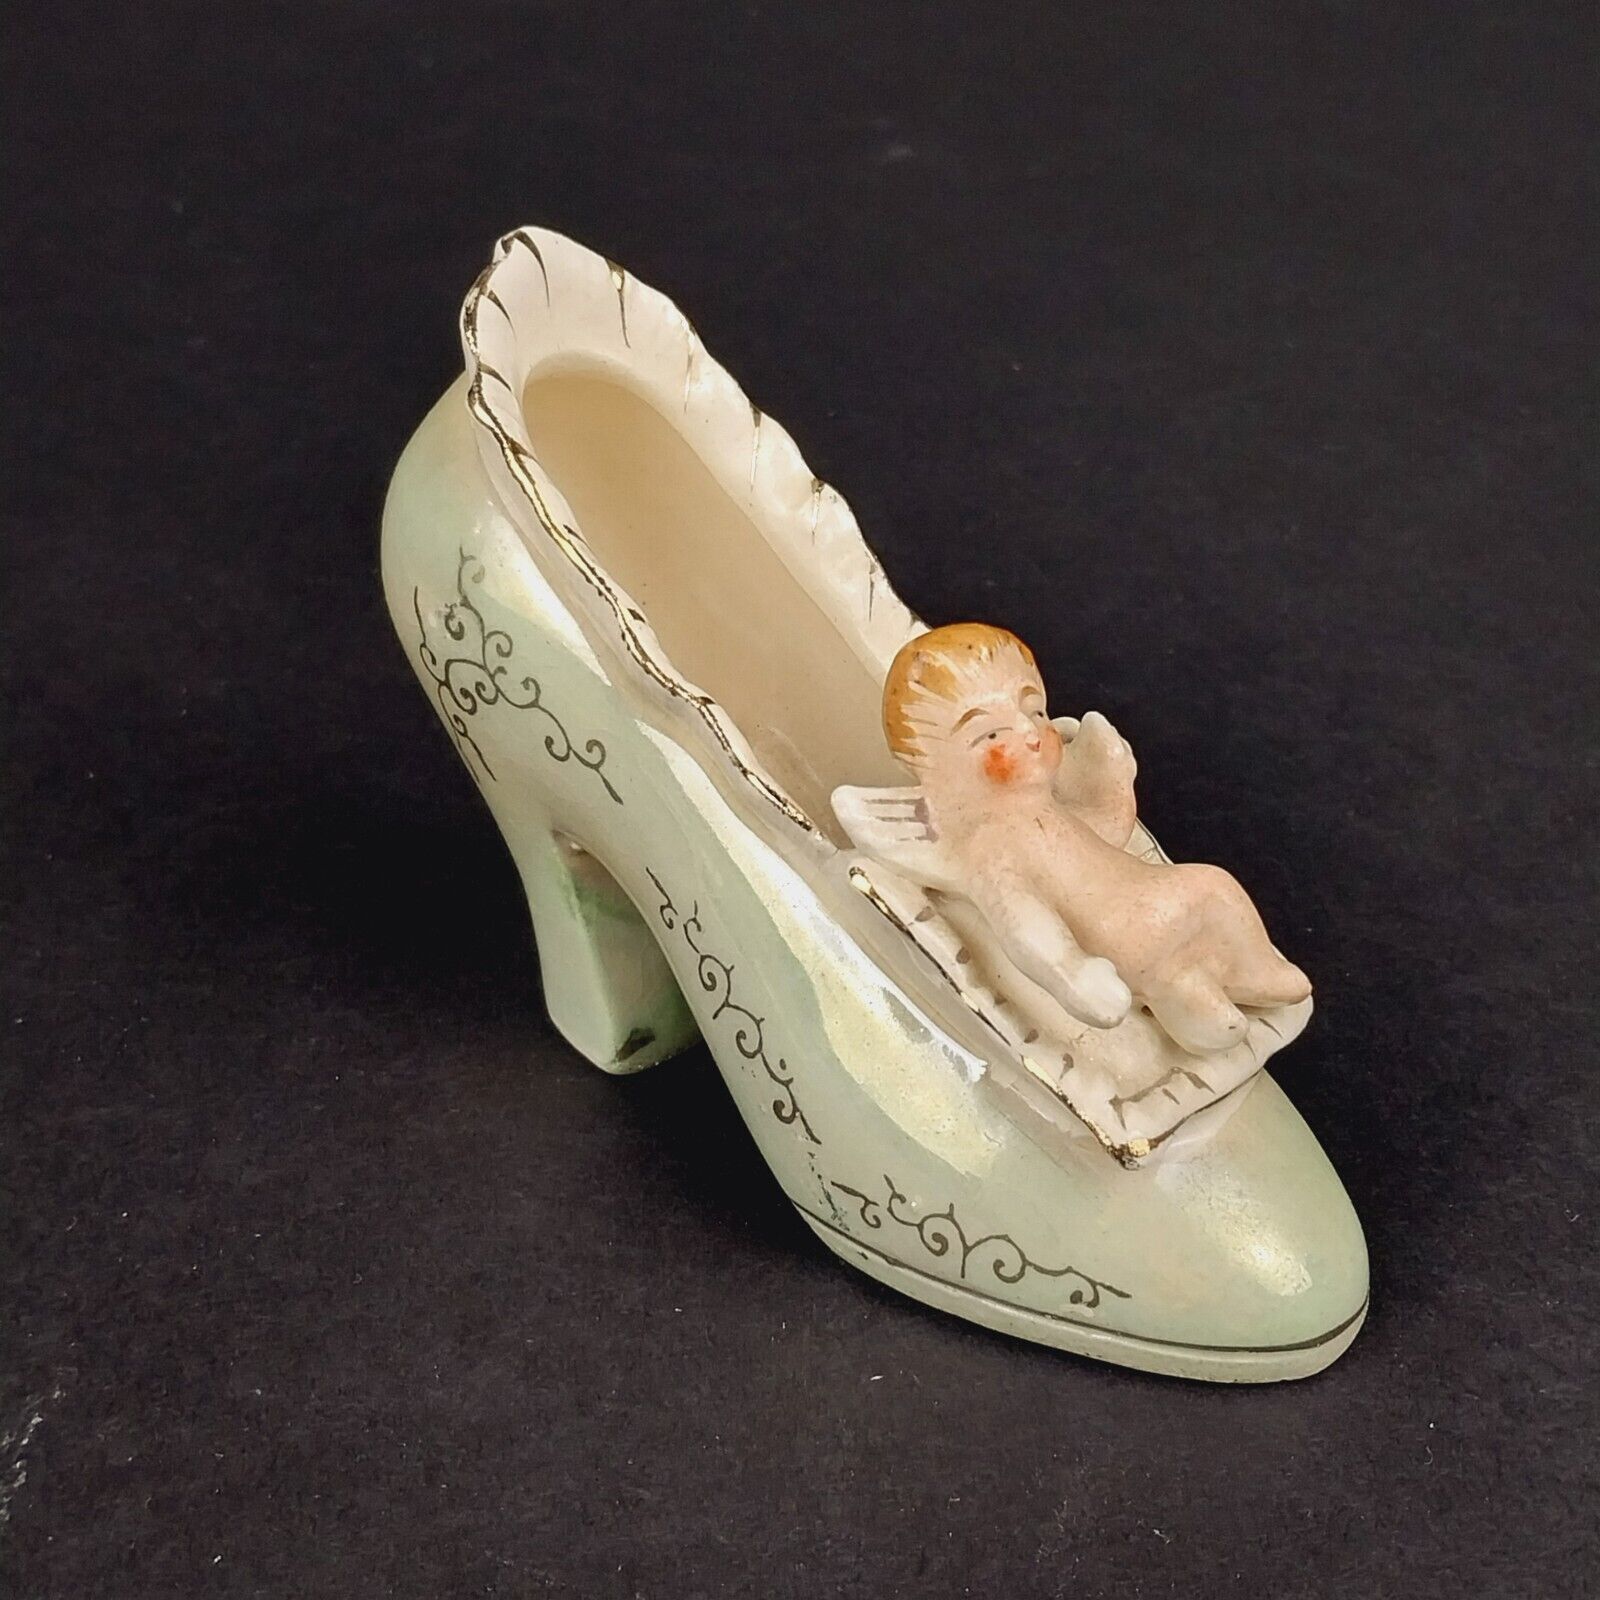 Vintage Pioneer Mdse Co NY Porcelain Shoe Figurine Cherub Angel Japan